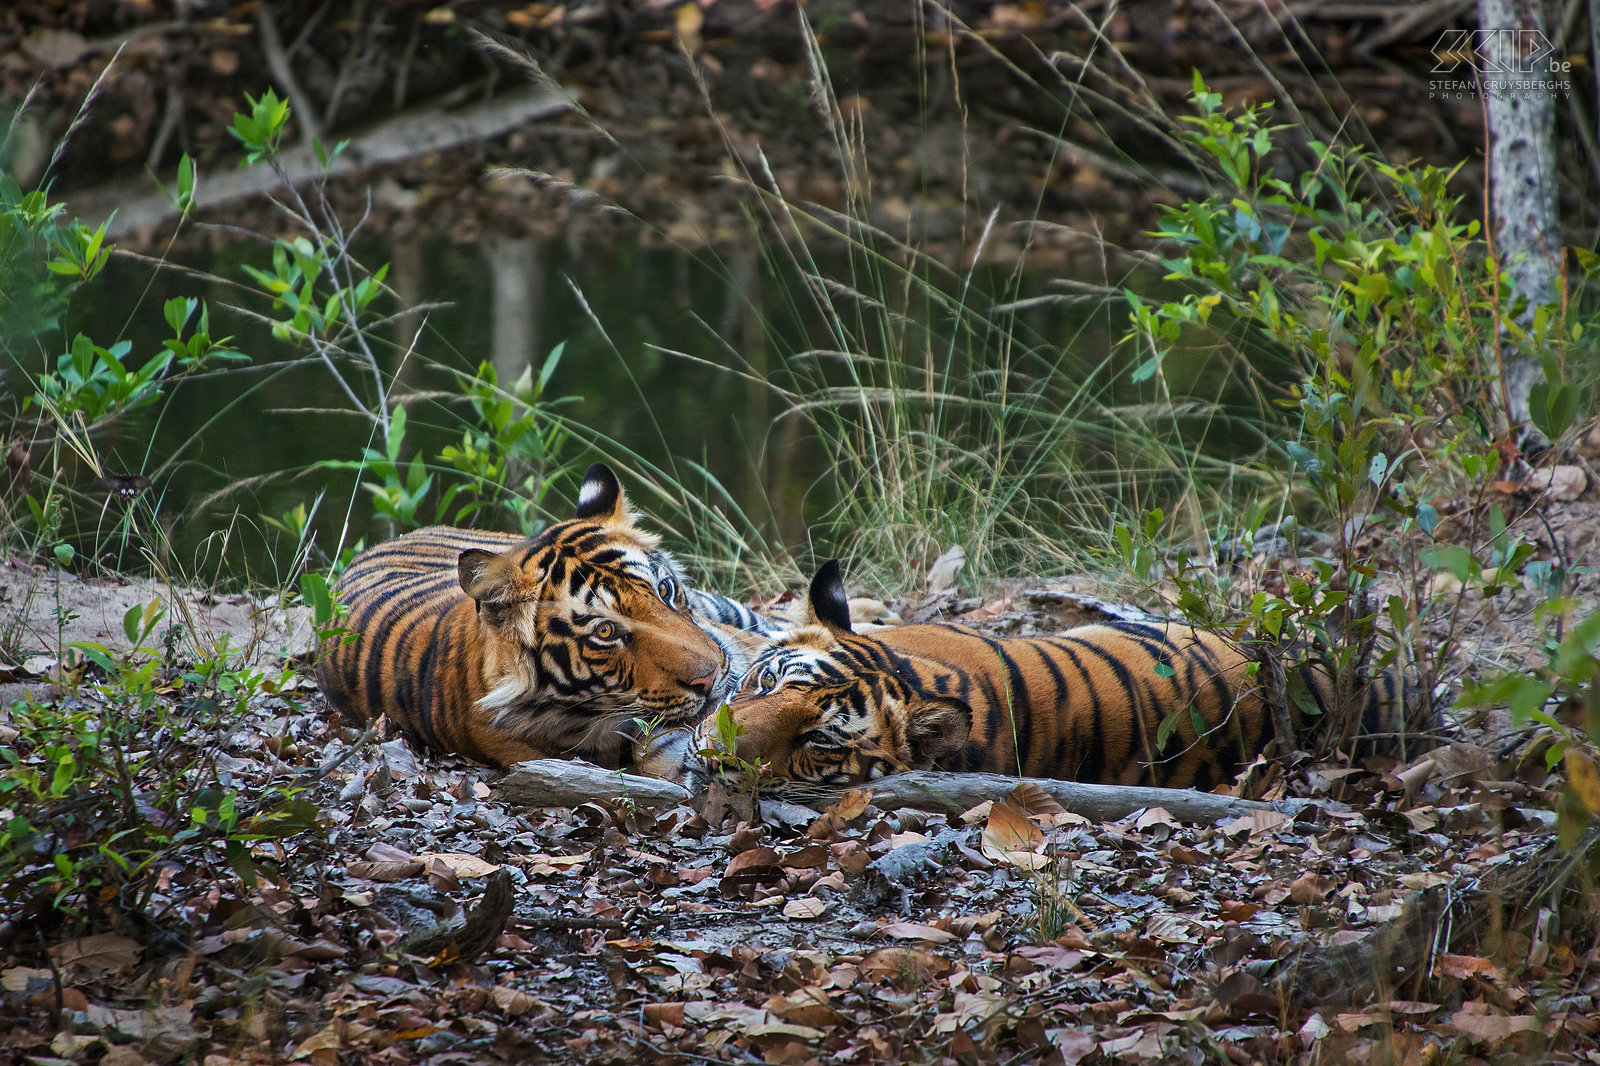 Bandhavgarh - Tijgers Bandhavgarh is een van de beste tijgerreservaten ter wereld. De eerste dag in Bandhavgarh hadden we al een eerste keer een tijger heel eventjes gezien en dat was een magisch moment. De tweede dag spotten we ’s morgens twee mannelijke tijgers aan een kleine waterpoel. Deze 2 broers zijn de 2 jaar oude welpen van de Banbehi tijgerin. Het was geweldig en spannend om deze prachtige dieren in het wild te zien. Er wordt geschat dat er van de Bengaalse tijger nog maar ongeveer 1850 dieren in het wild leven. Stefan Cruysberghs